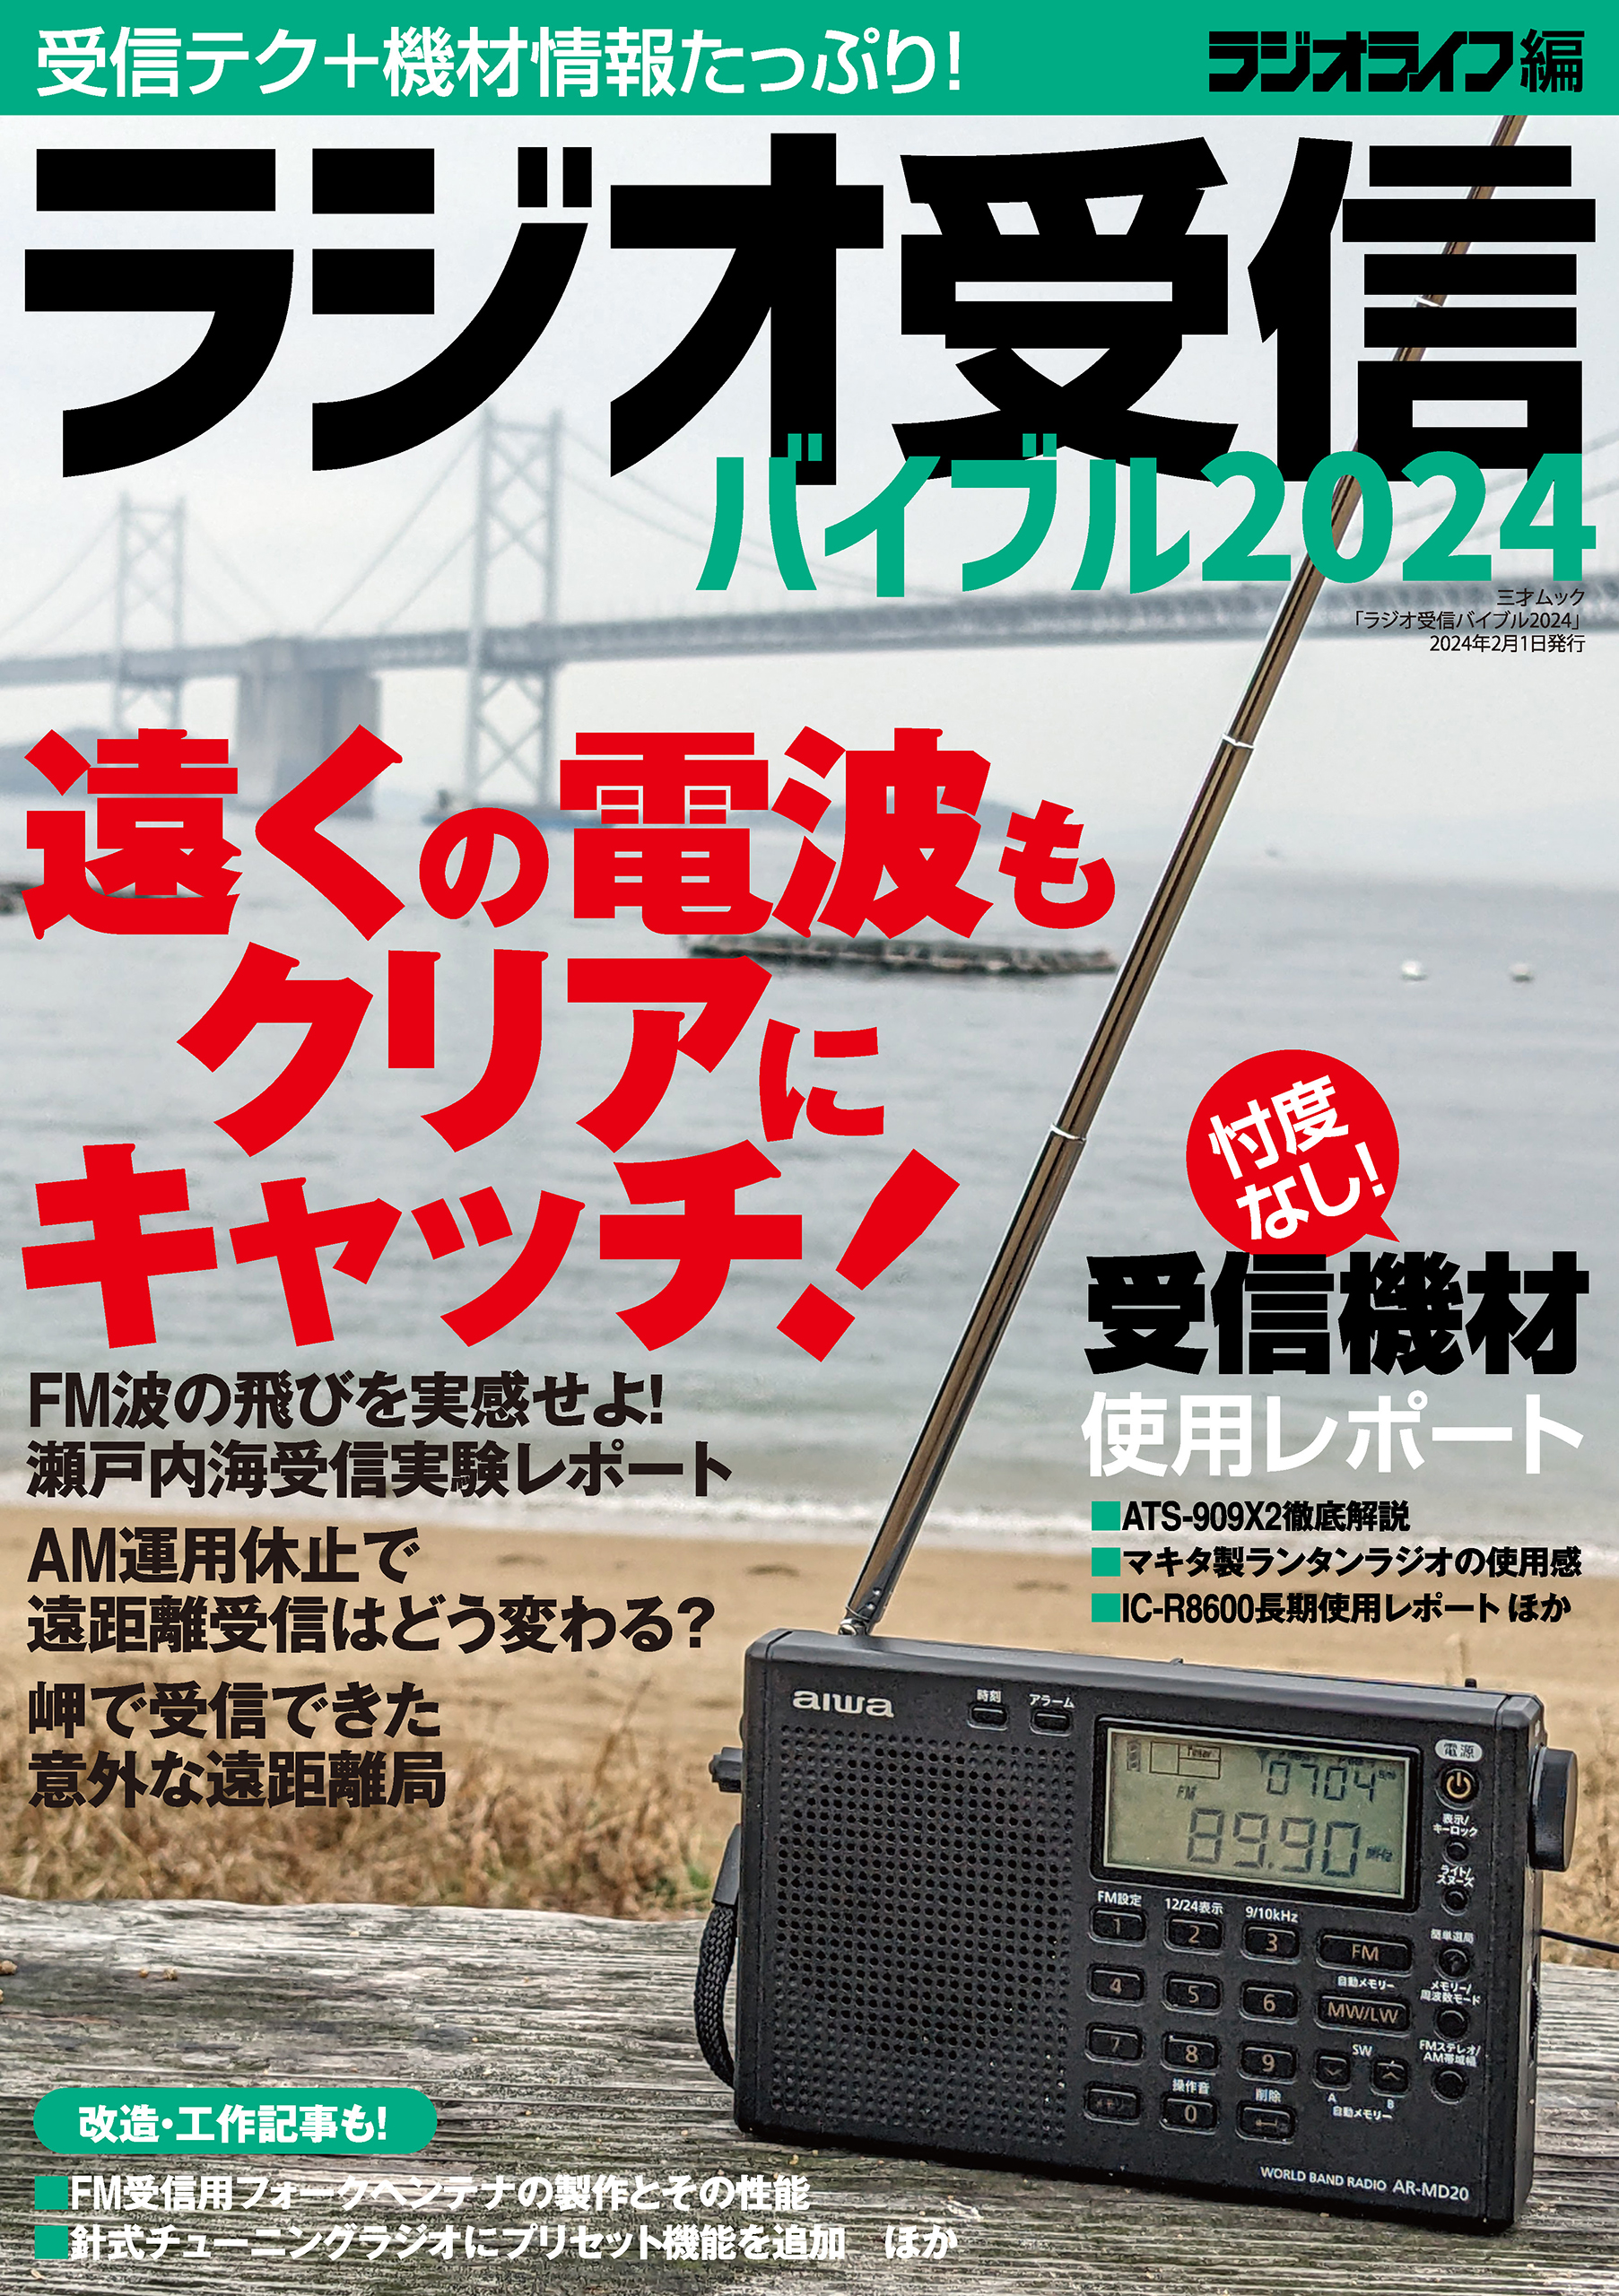 SANGEAN DT-800 イエロー 日本向けモデル - ラジオ・コンポ